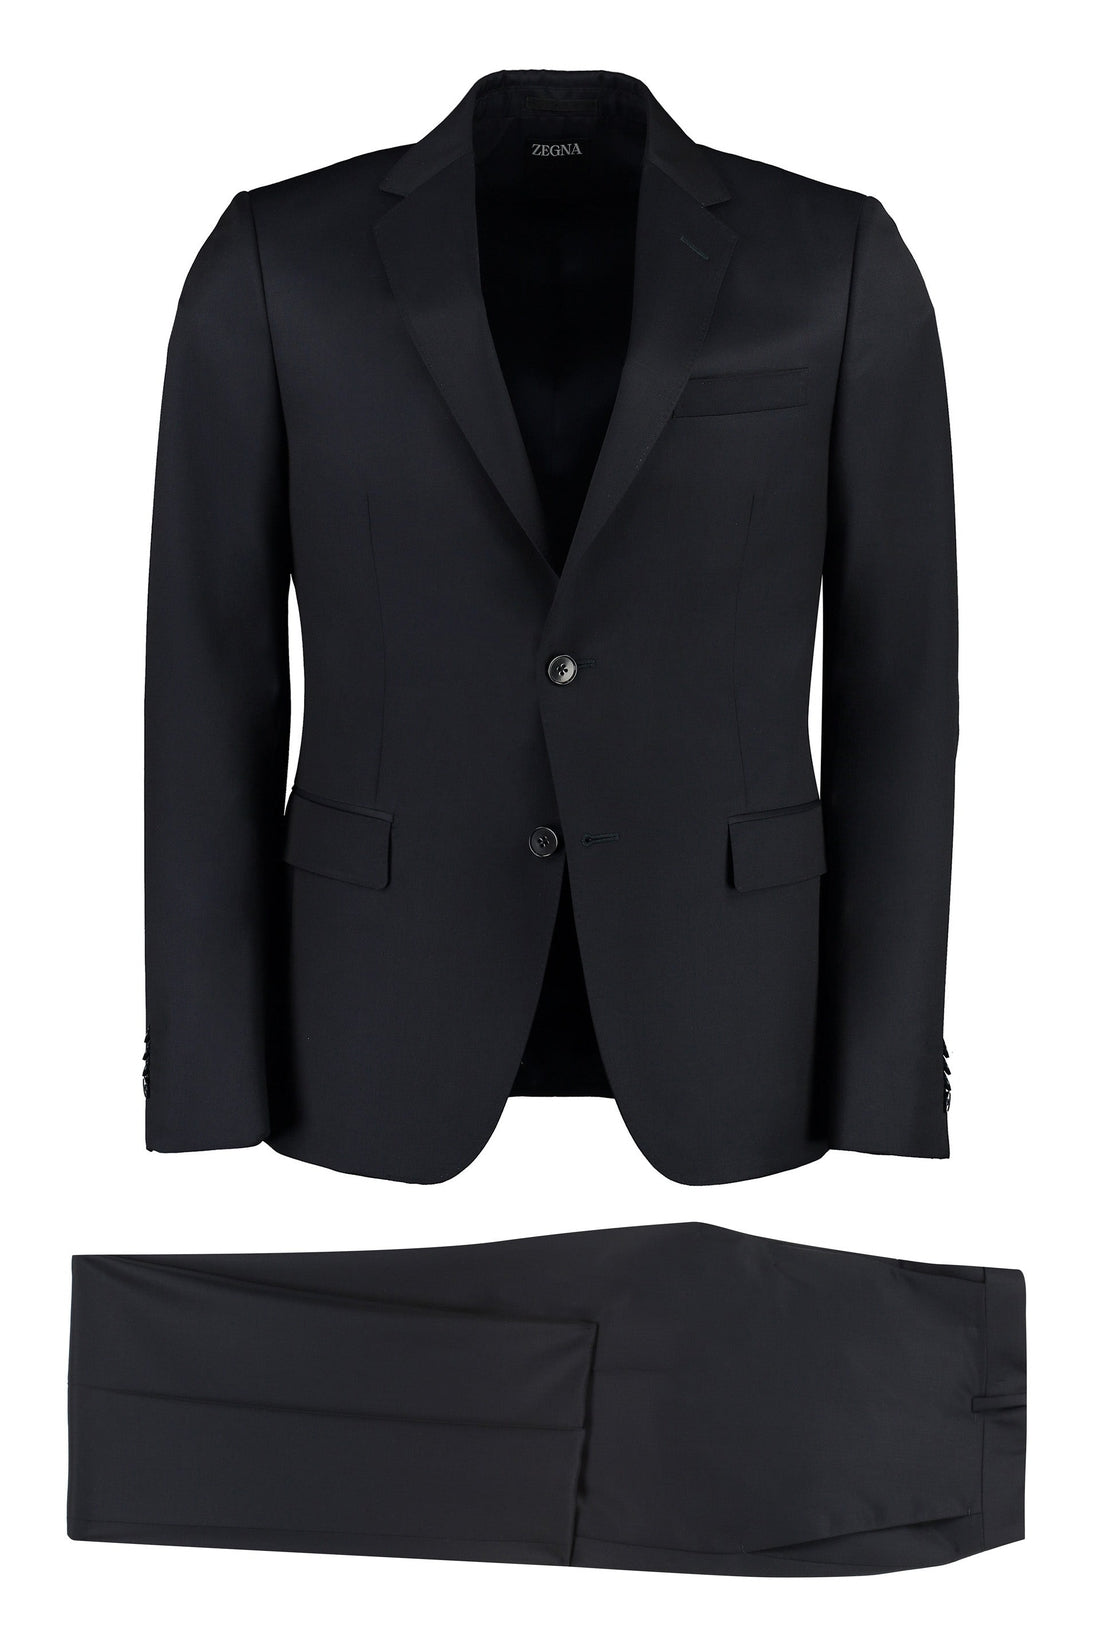 Zegna-OUTLET-SALE-Wool-mohair blend two-pieces suit-ARCHIVIST